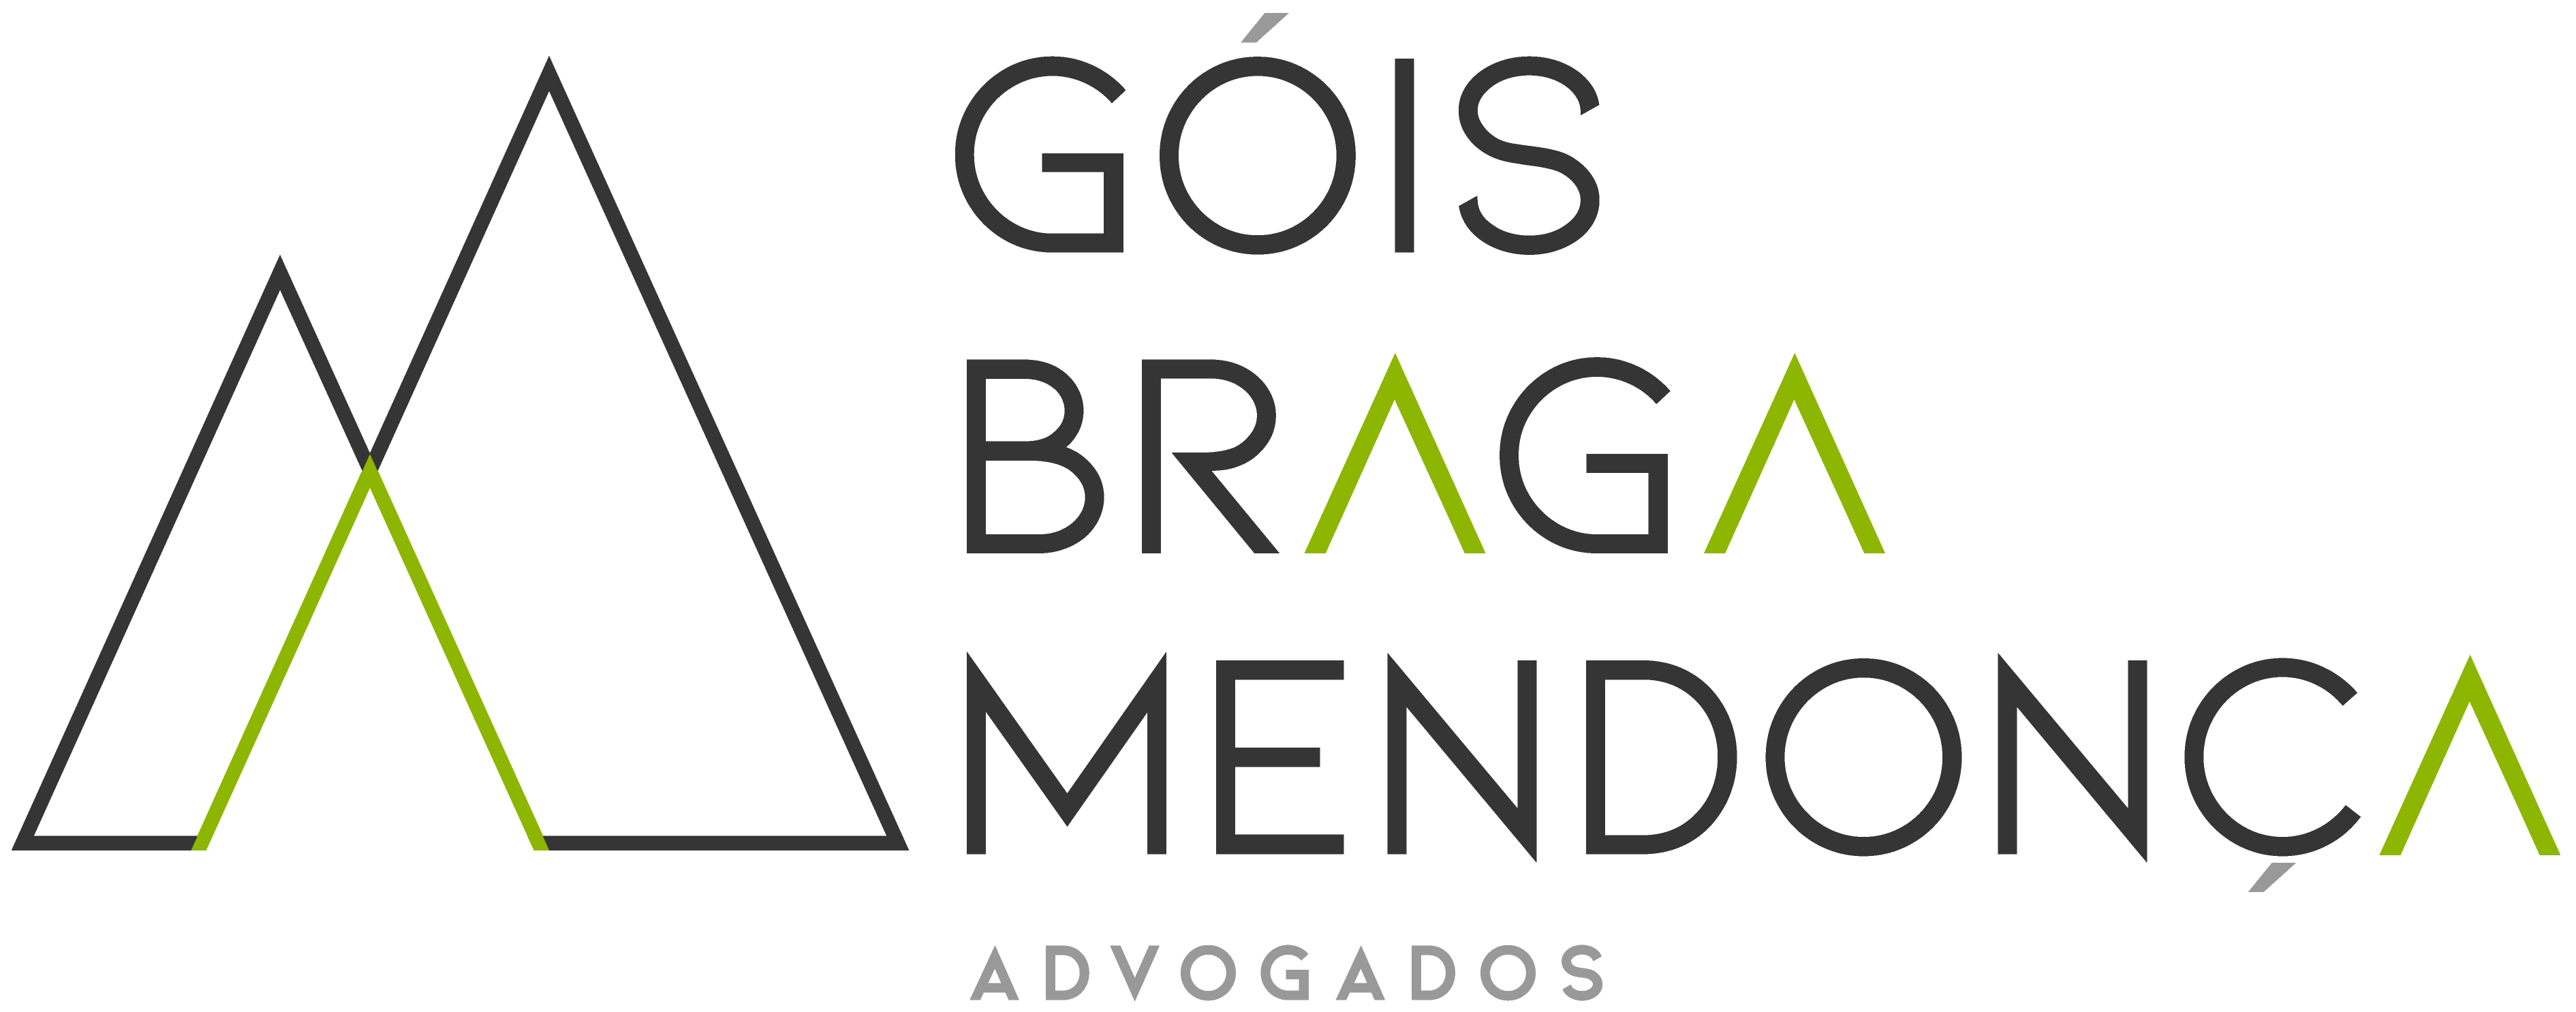 Gois Braga Mendonça Advogados